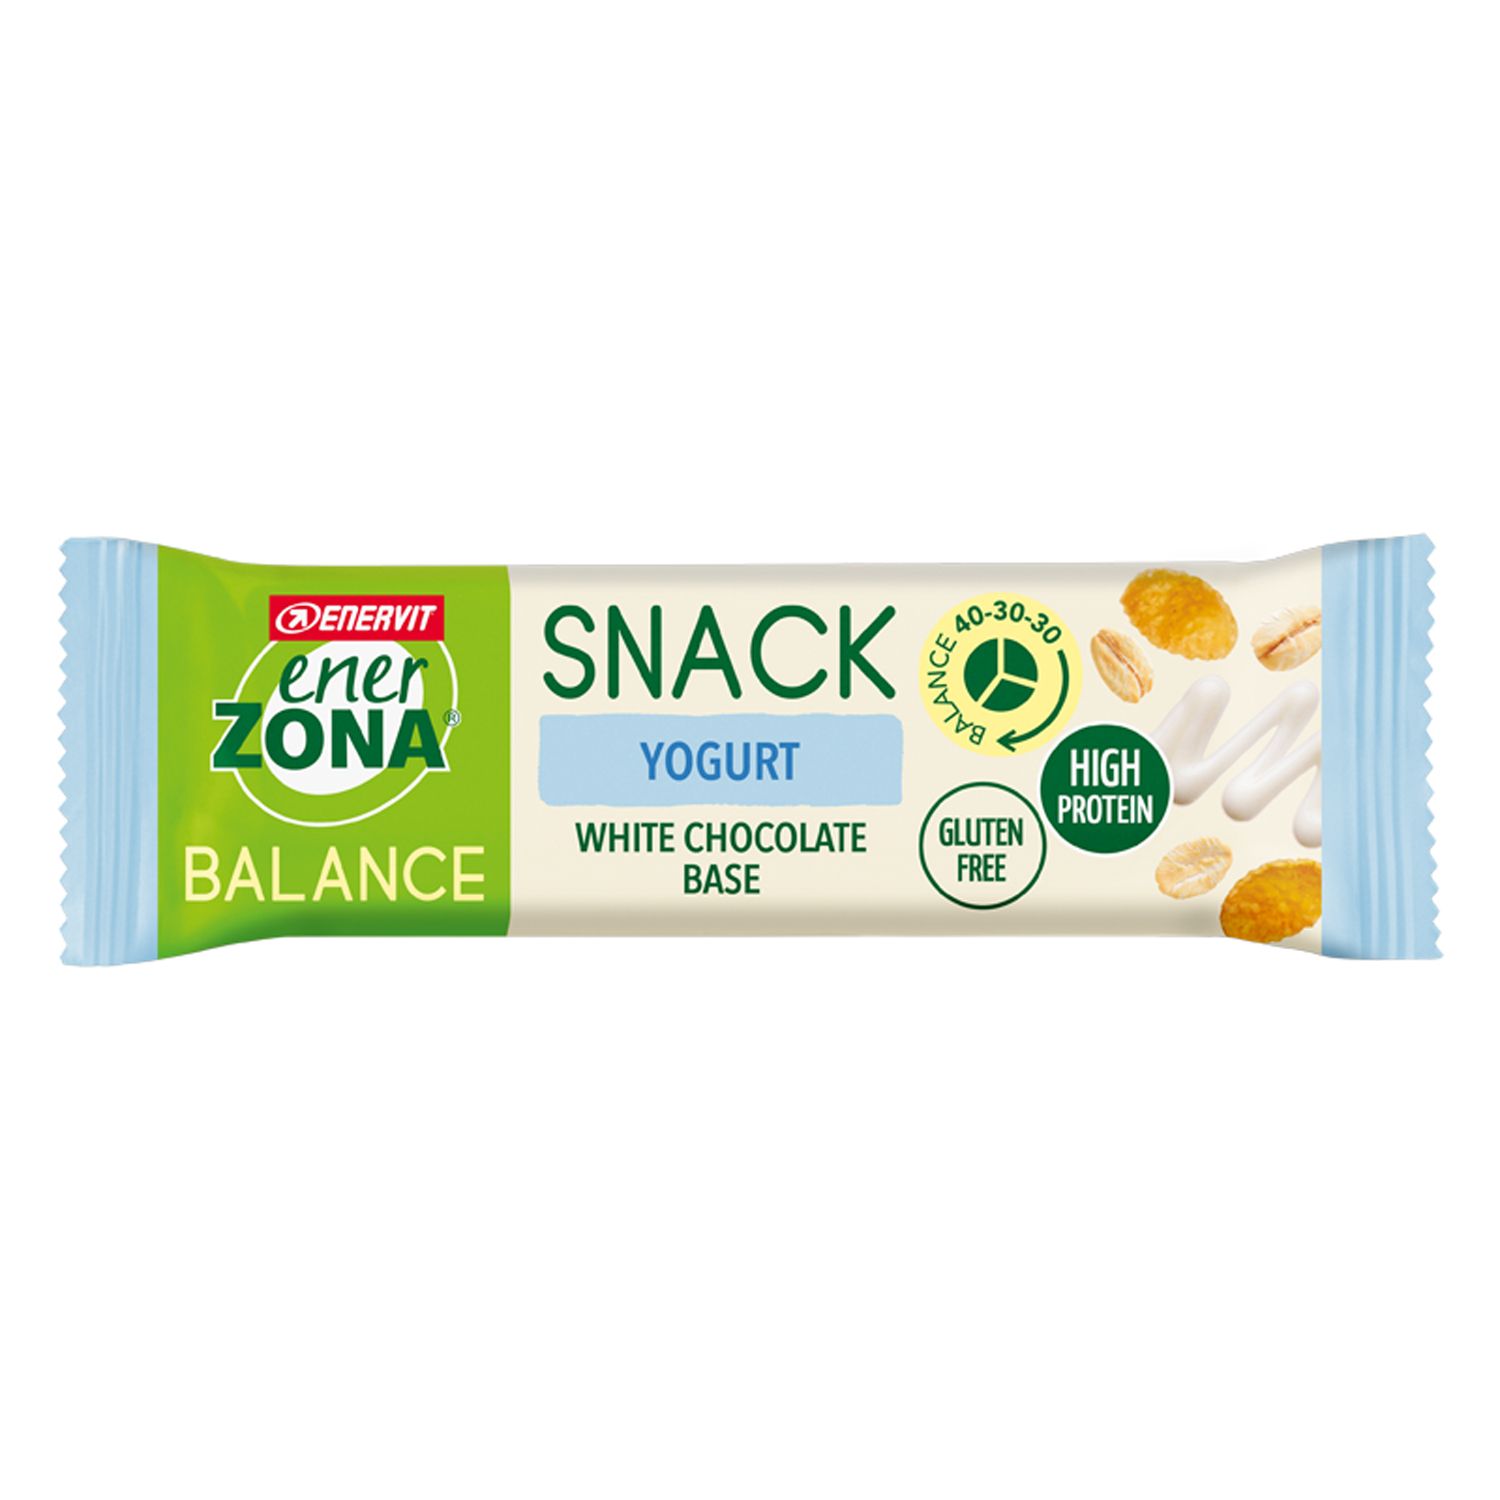 Image of ENERVIT® EnerZONA Snack Yogurt